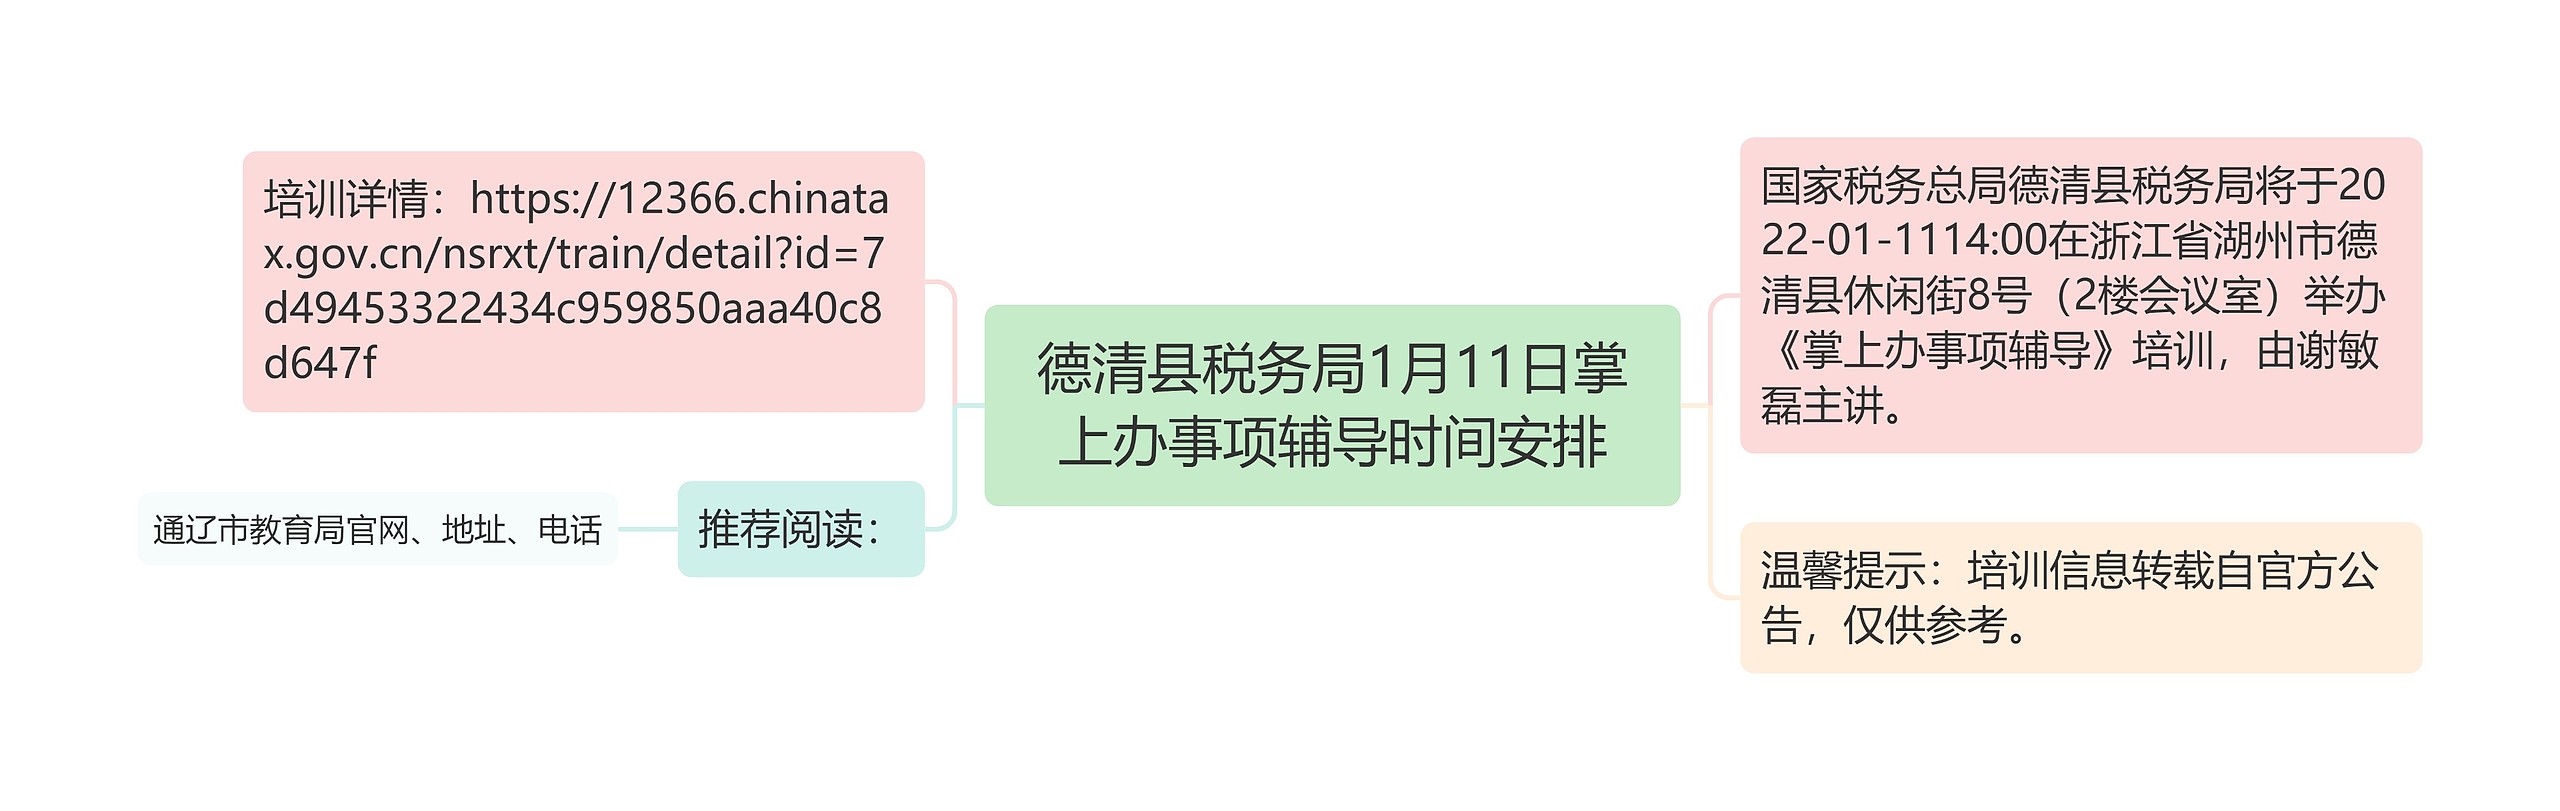 德清县税务局1月11日掌上办事项辅导时间安排思维导图